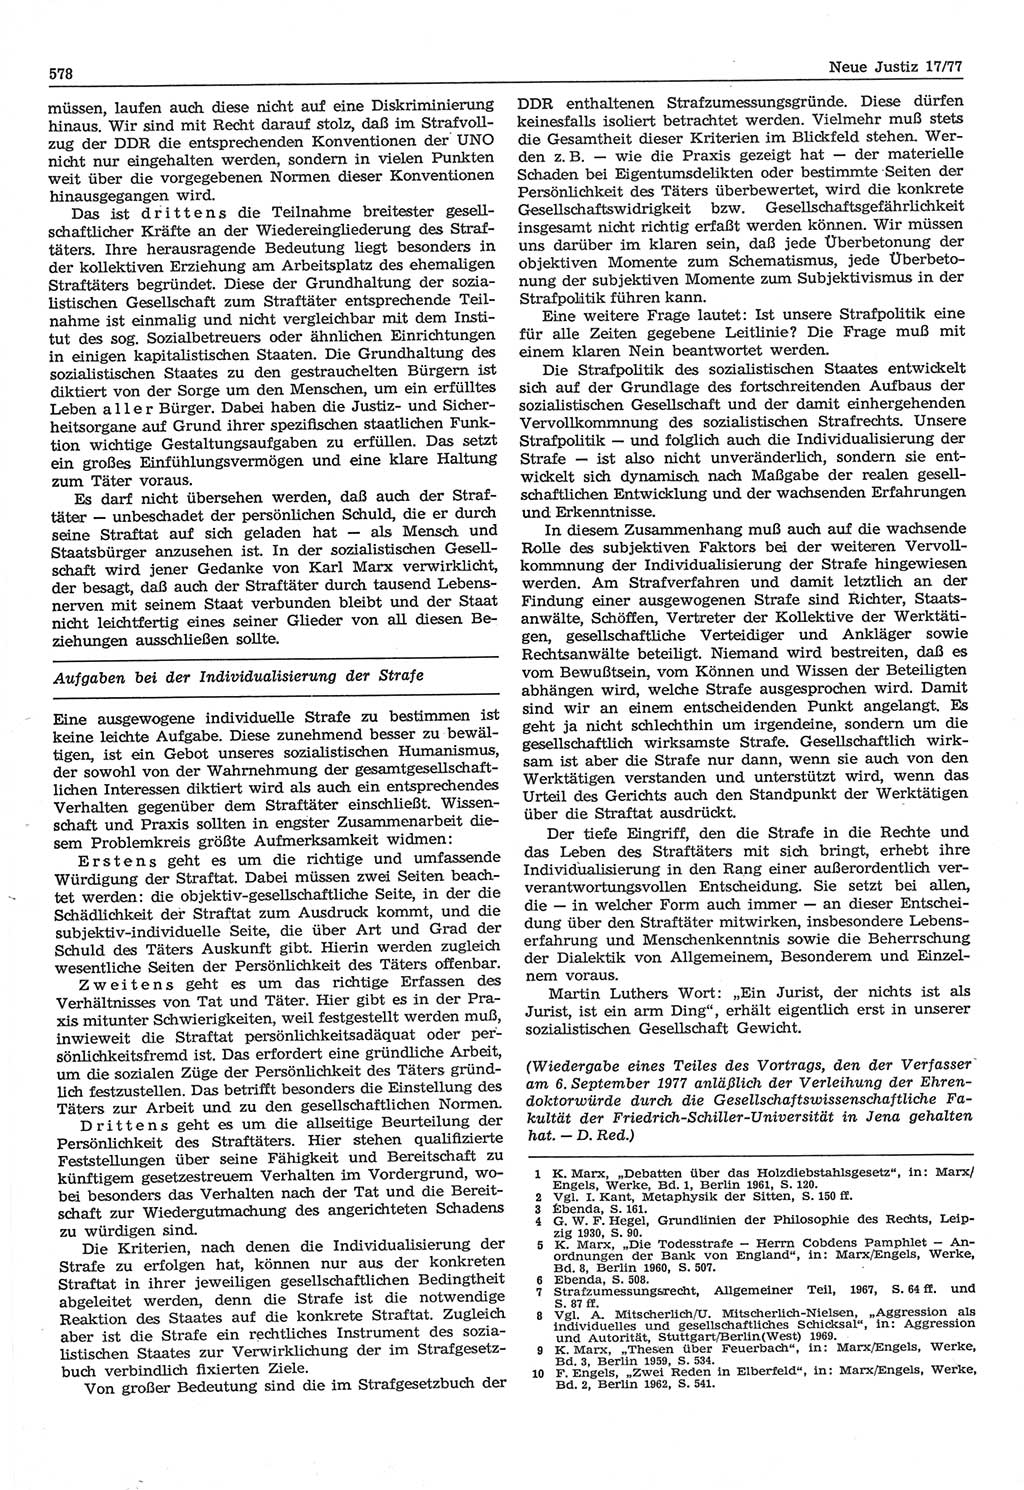 Neue Justiz (NJ), Zeitschrift für Recht und Rechtswissenschaft-Zeitschrift, sozialistisches Recht und Gesetzlichkeit, 31. Jahrgang 1977, Seite 578 (NJ DDR 1977, S. 578)